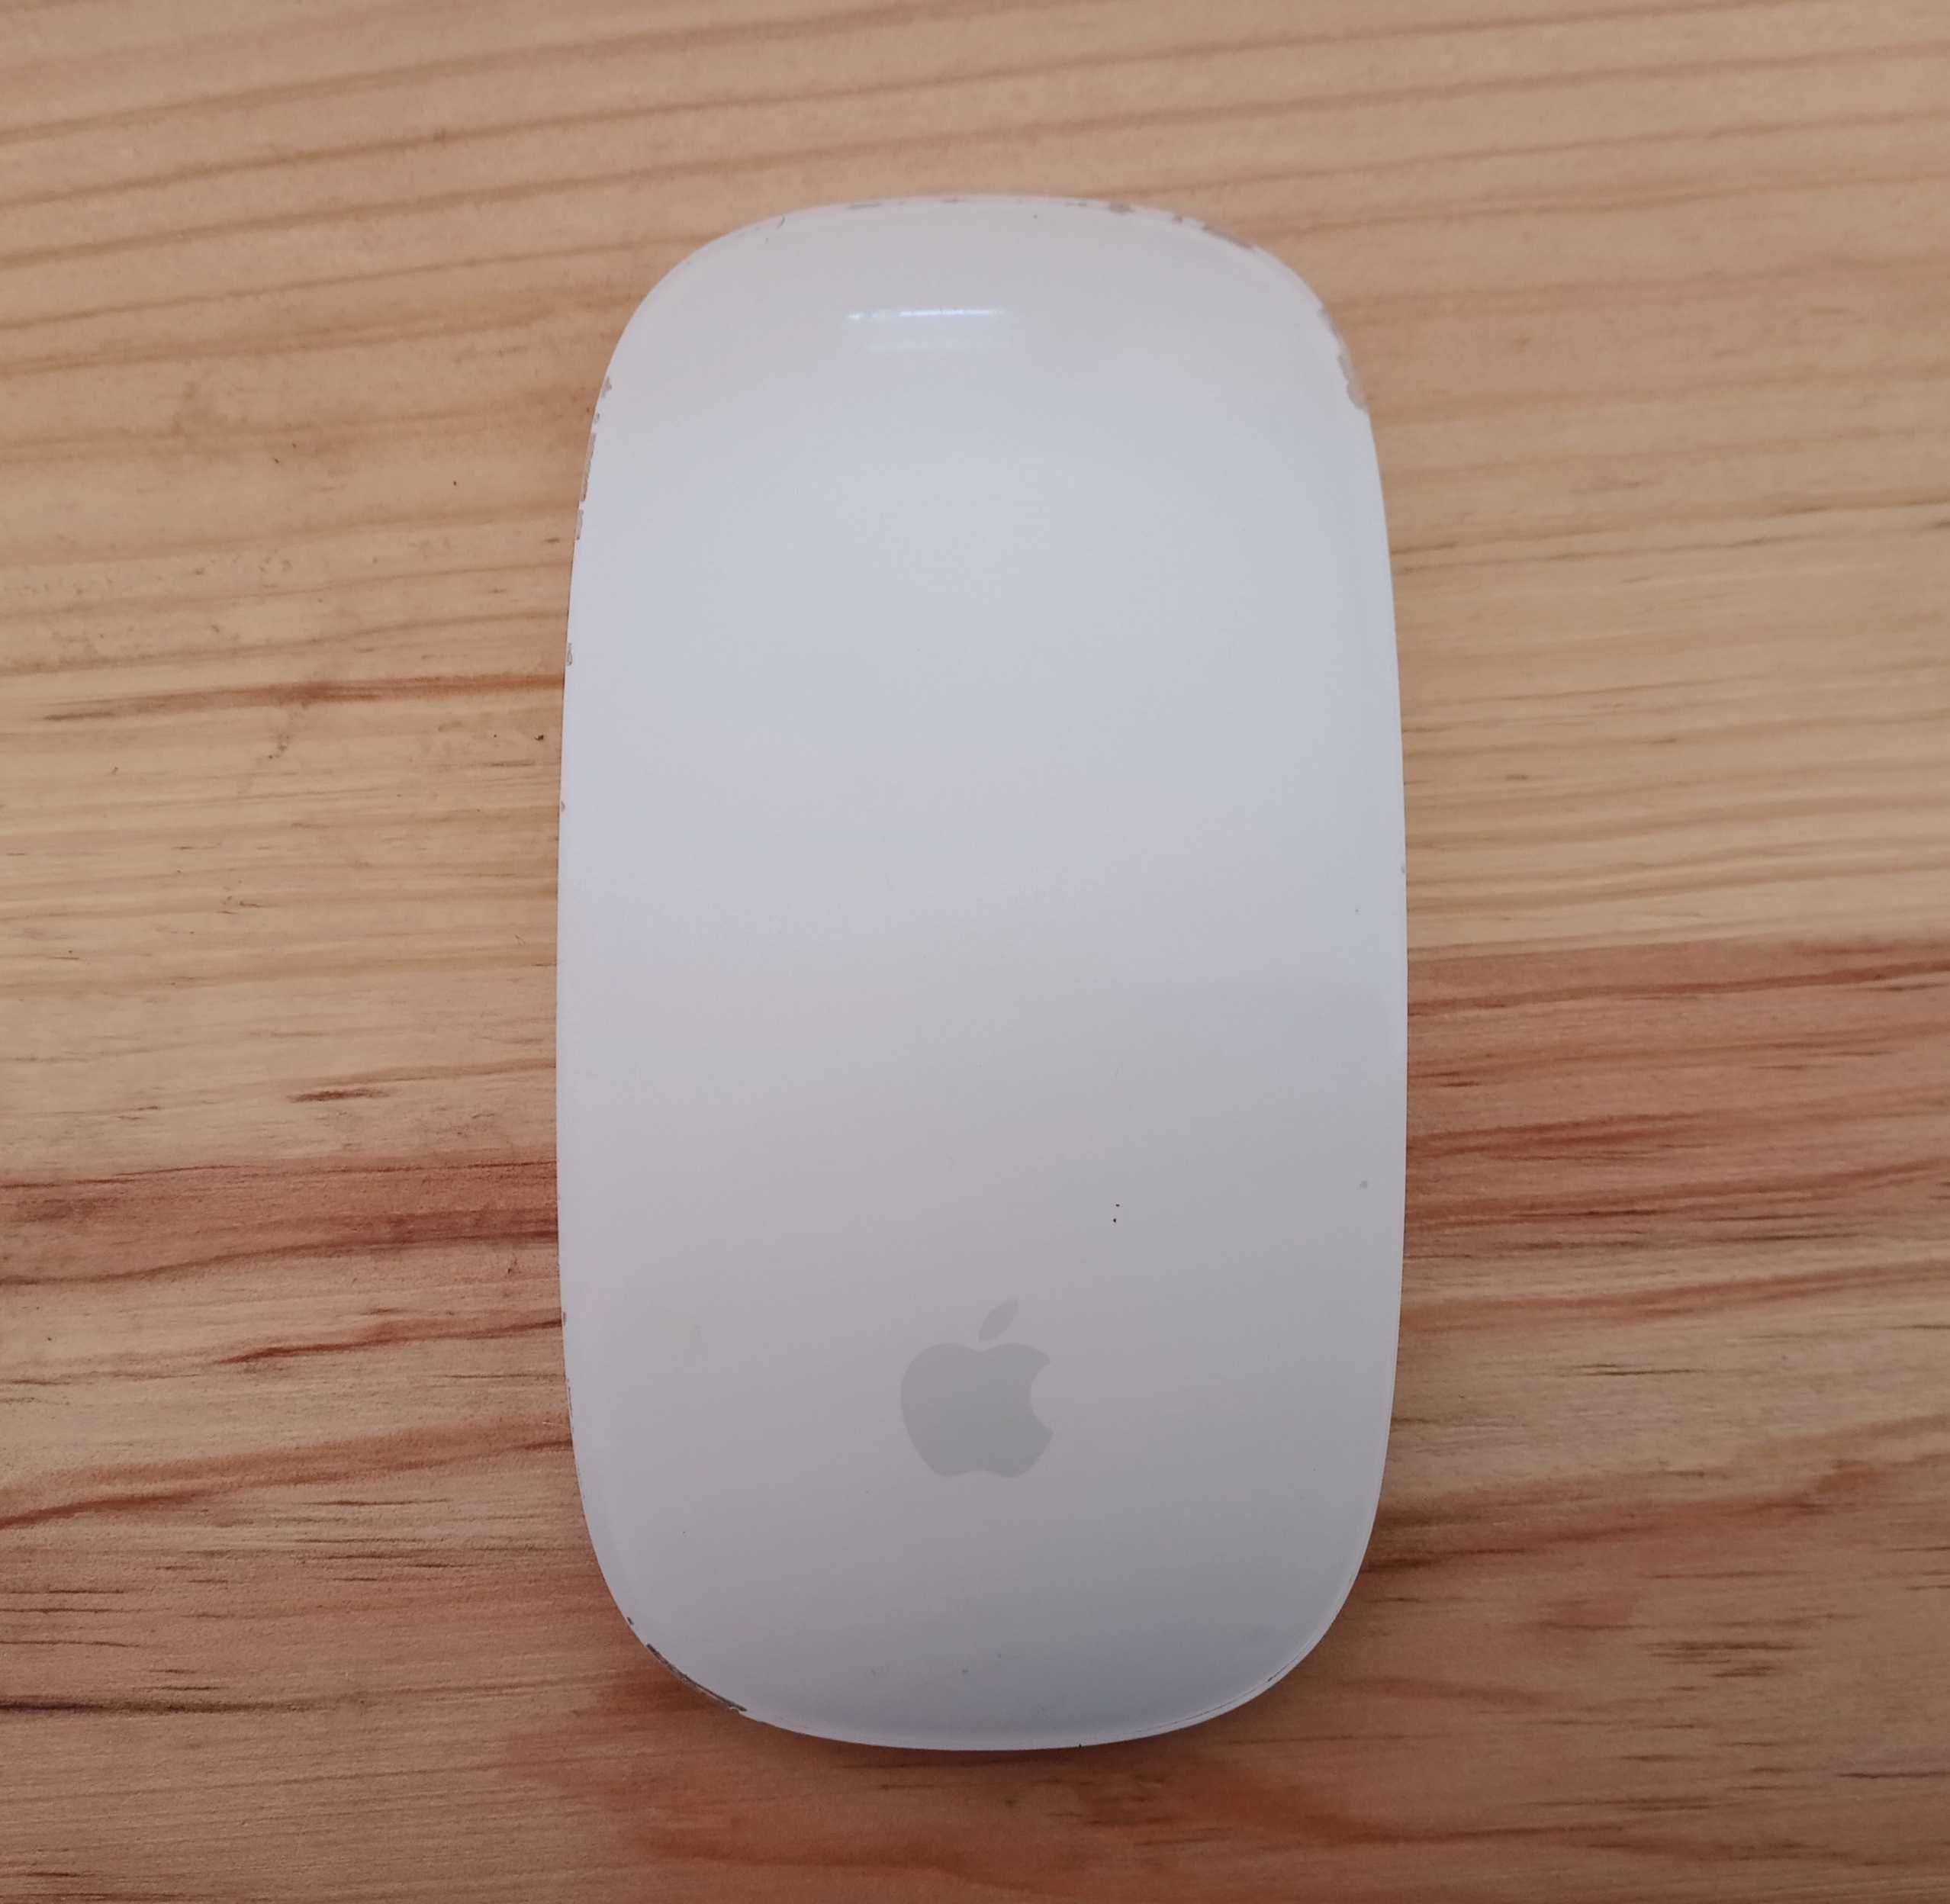 Teclado Apple mais rato Apple em branco